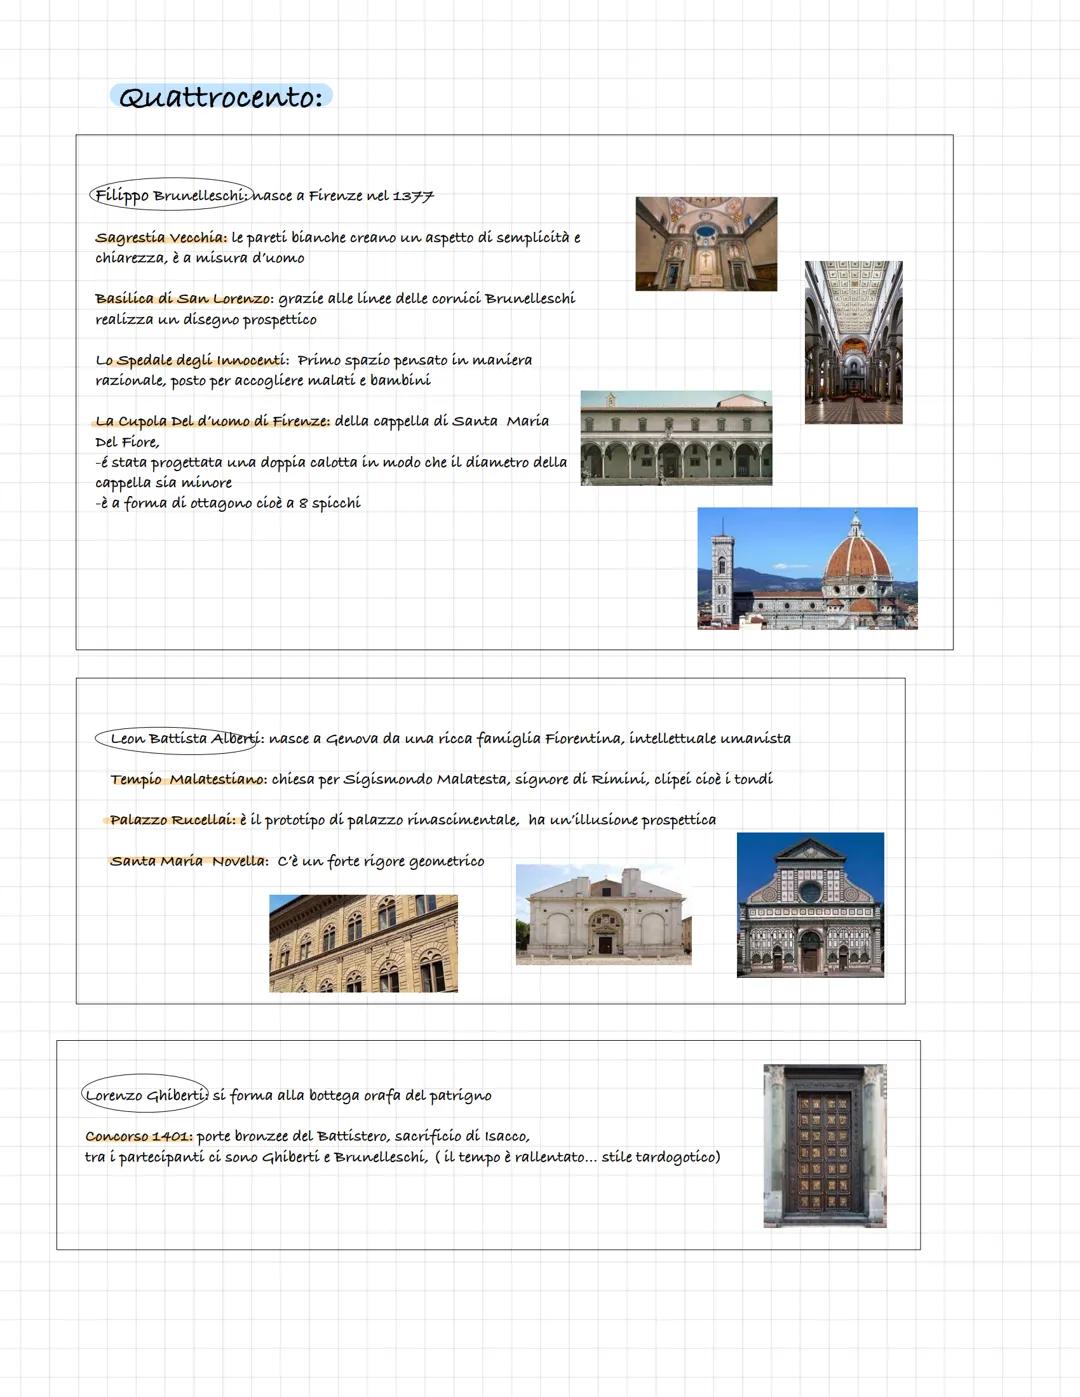 ARTE
Quattrocento Quattrocento:
Filippo Brunelleschi: nasce a Firenze nel 1377
sagrestía vecchia: le pareti bianche creano un aspetto di sem